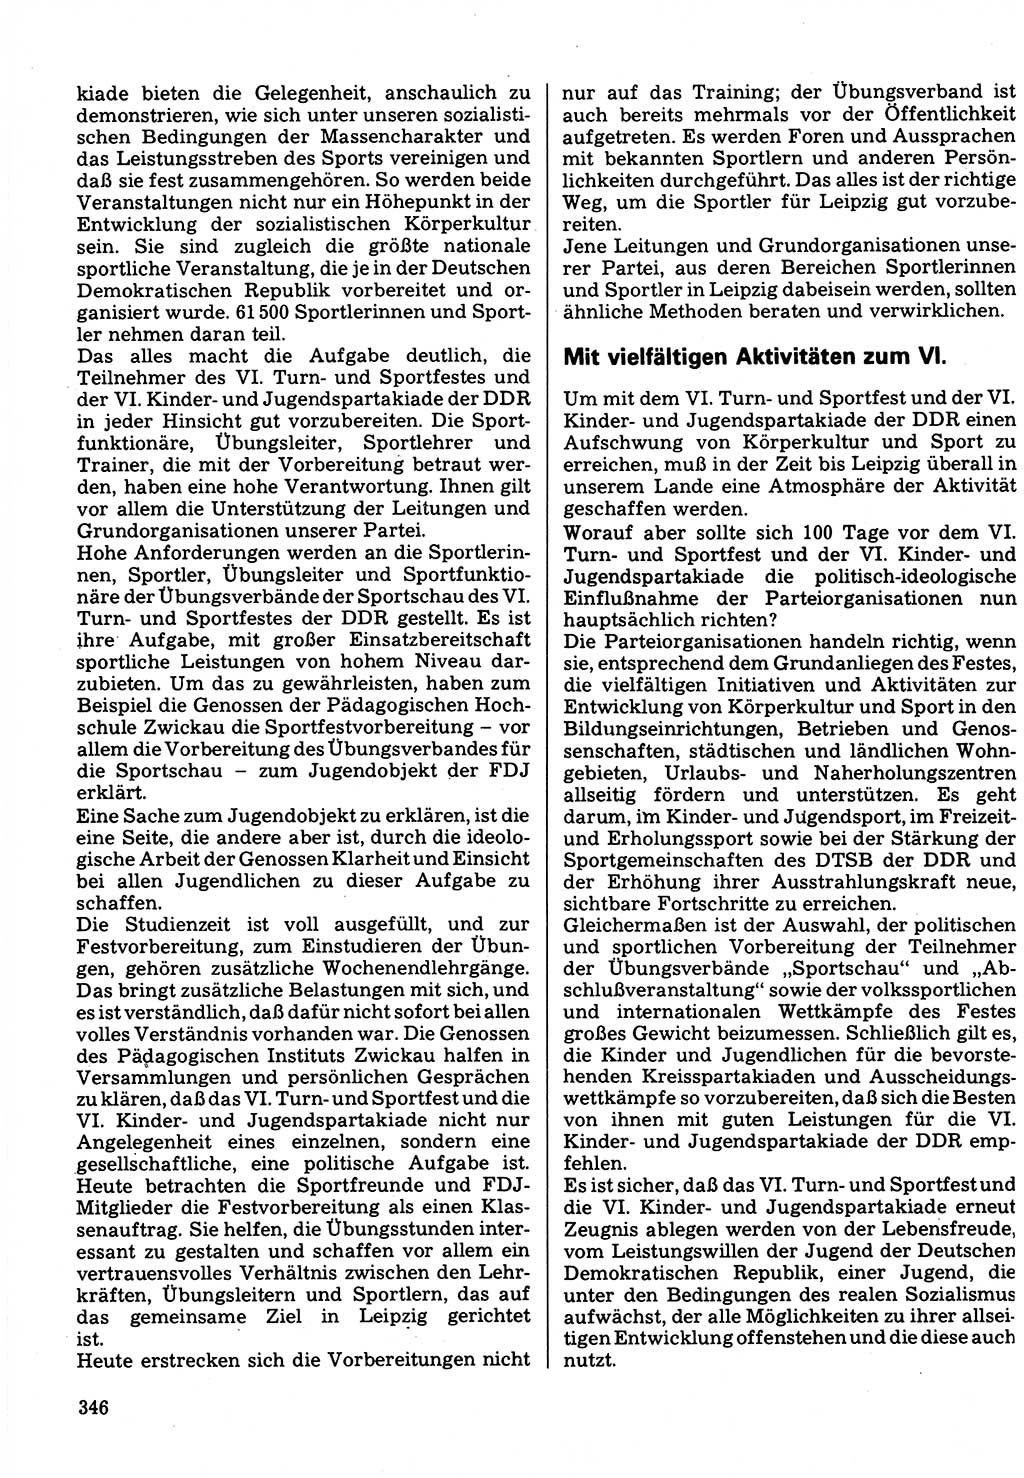 Neuer Weg (NW), Organ des Zentralkomitees (ZK) der SED (Sozialistische Einheitspartei Deutschlands) für Fragen des Parteilebens, 32. Jahrgang [Deutsche Demokratische Republik (DDR)] 1977, Seite 346 (NW ZK SED DDR 1977, S. 346)